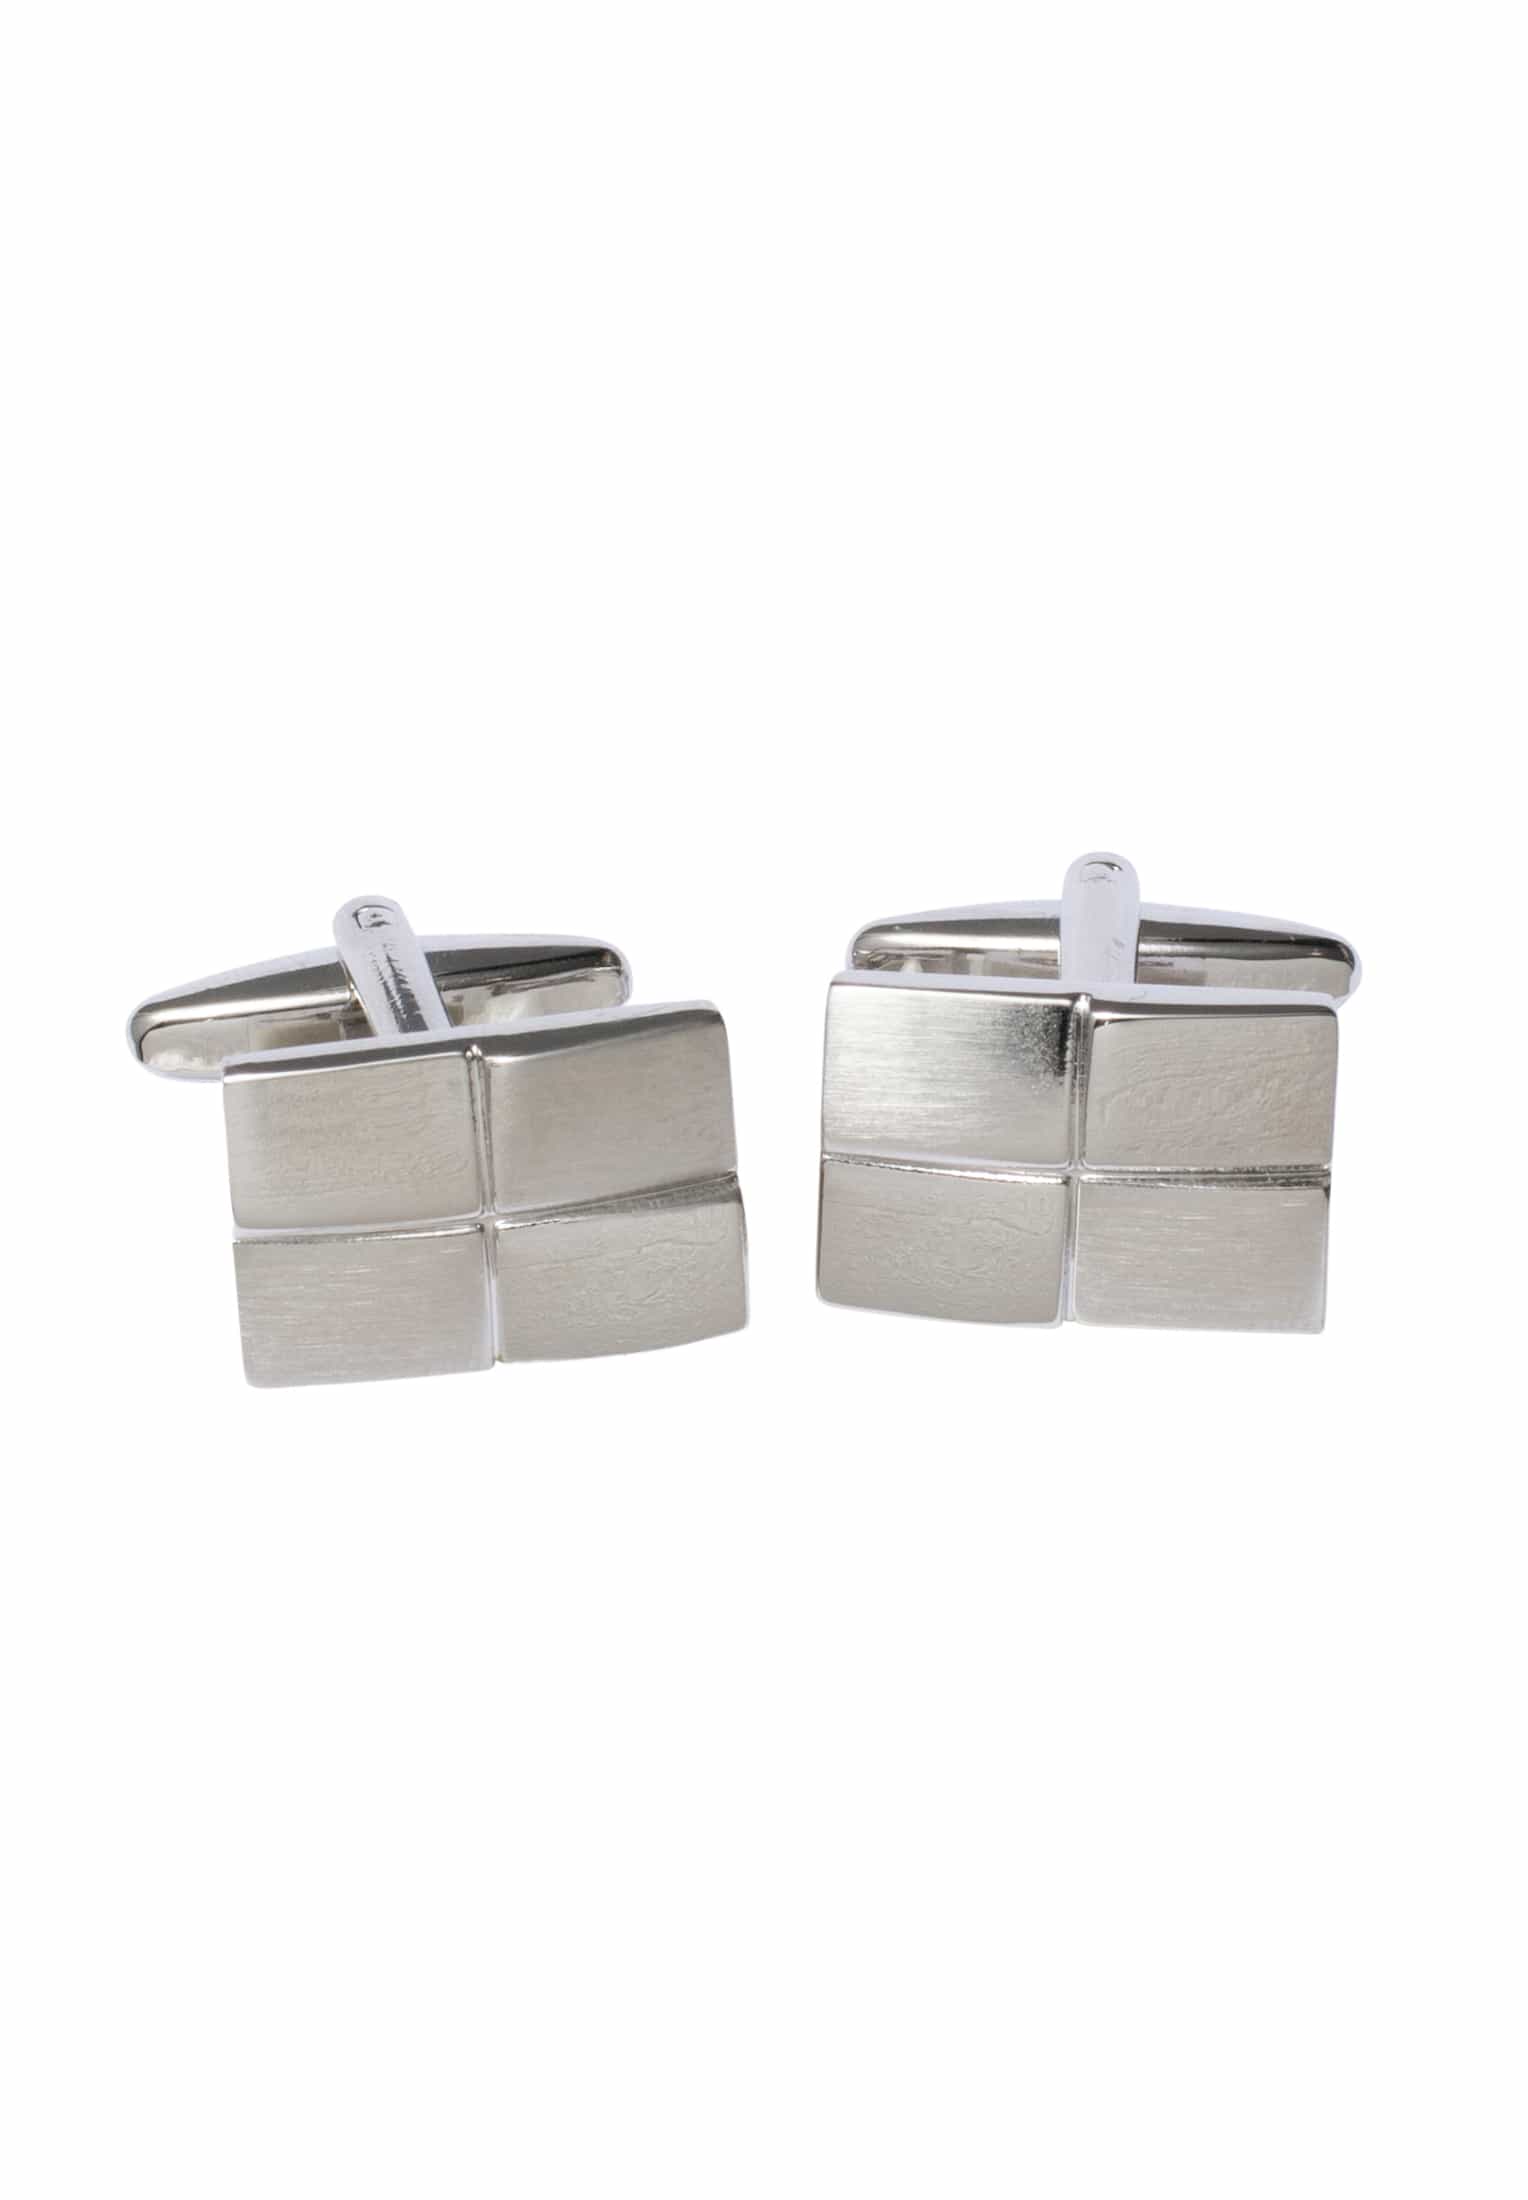 Cufflinks in silver plain